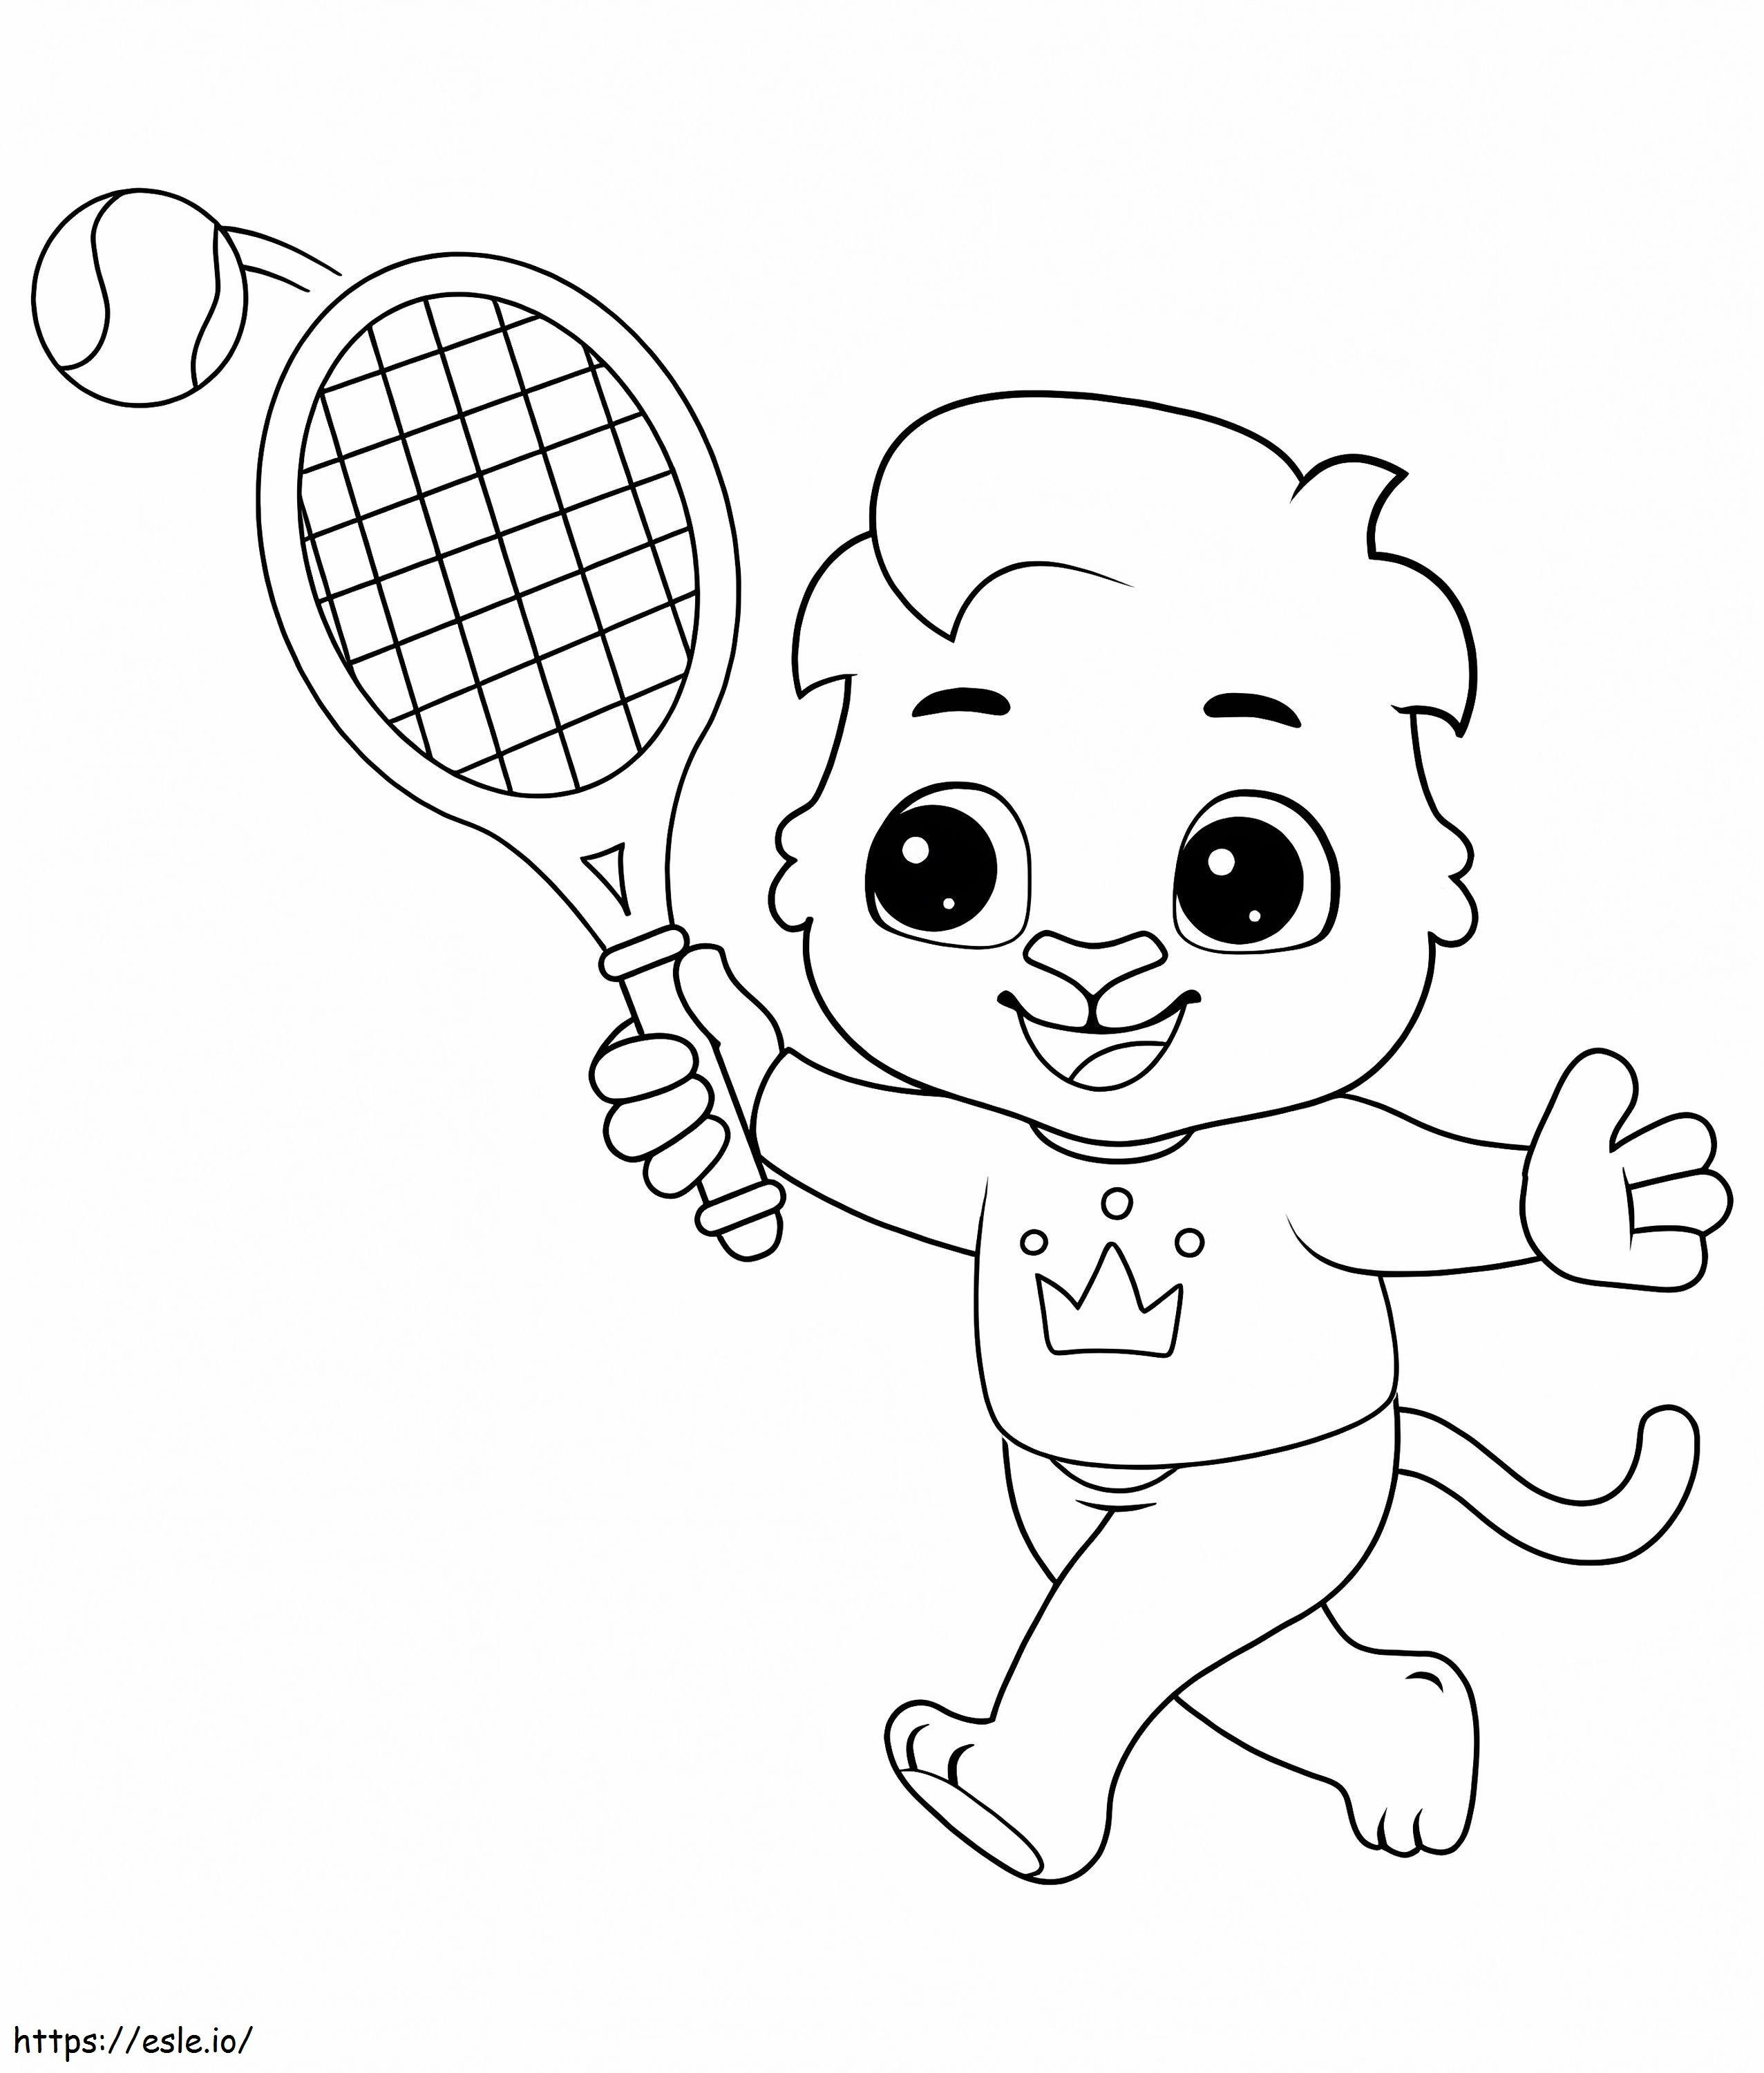 Cartoon Tennis coloring page